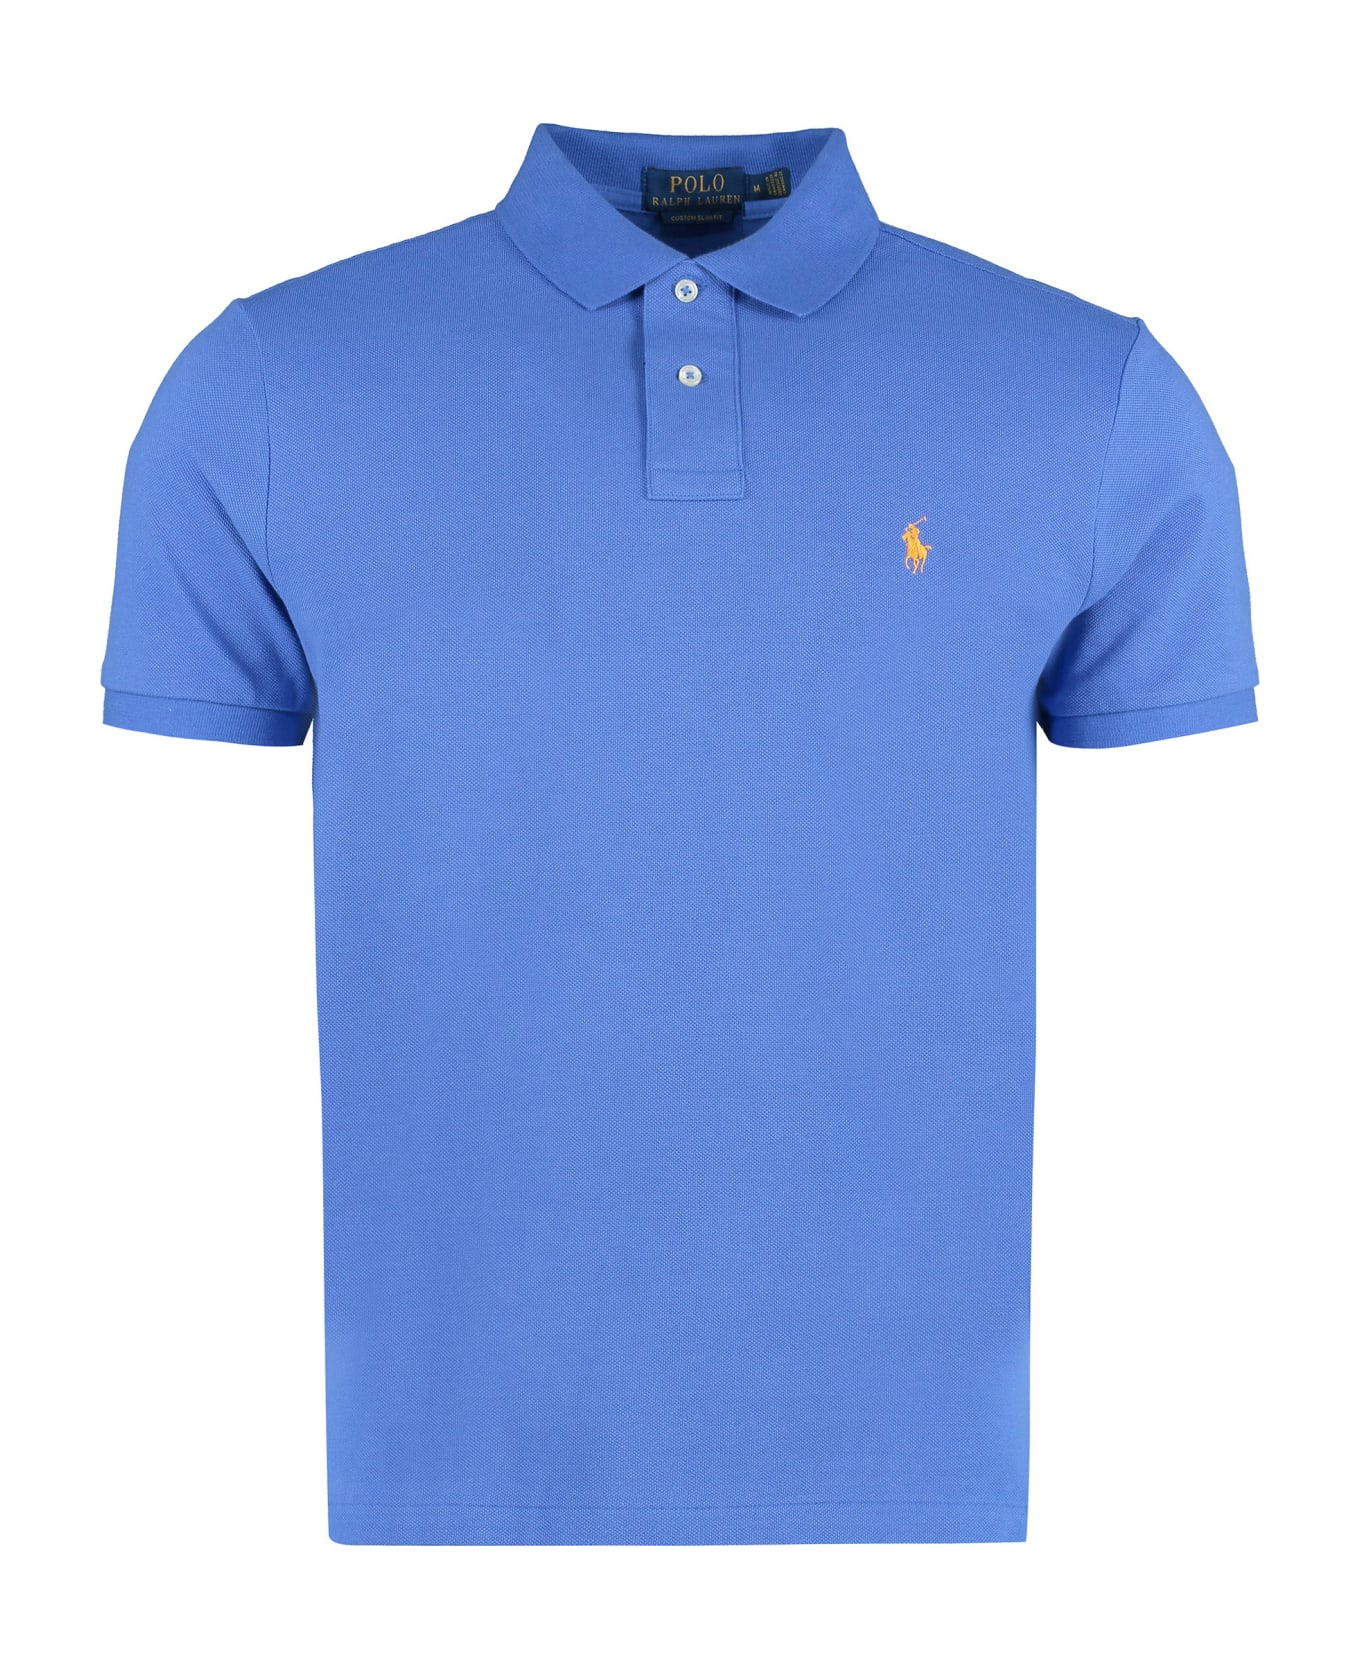 Ralph Lauren Short Sleeve Cotton Polo Shirt - New Iris Blue